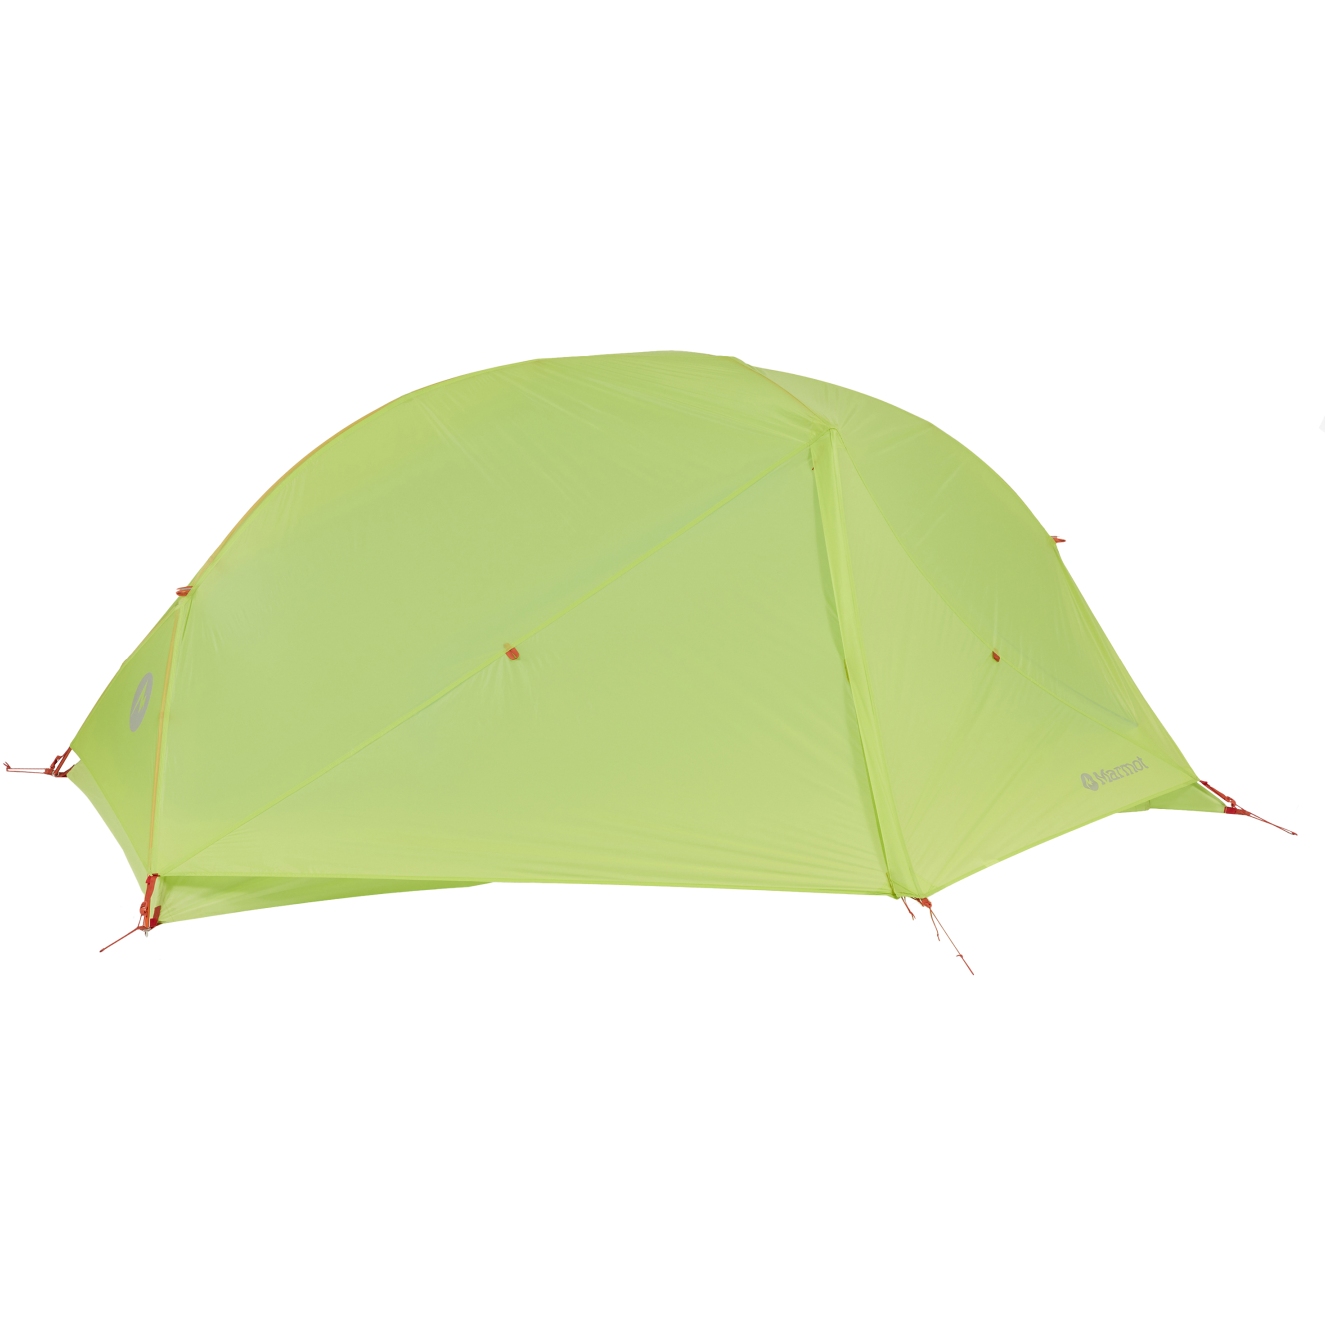 Productfoto van Marmot Superalloy 3P Tent - green glow